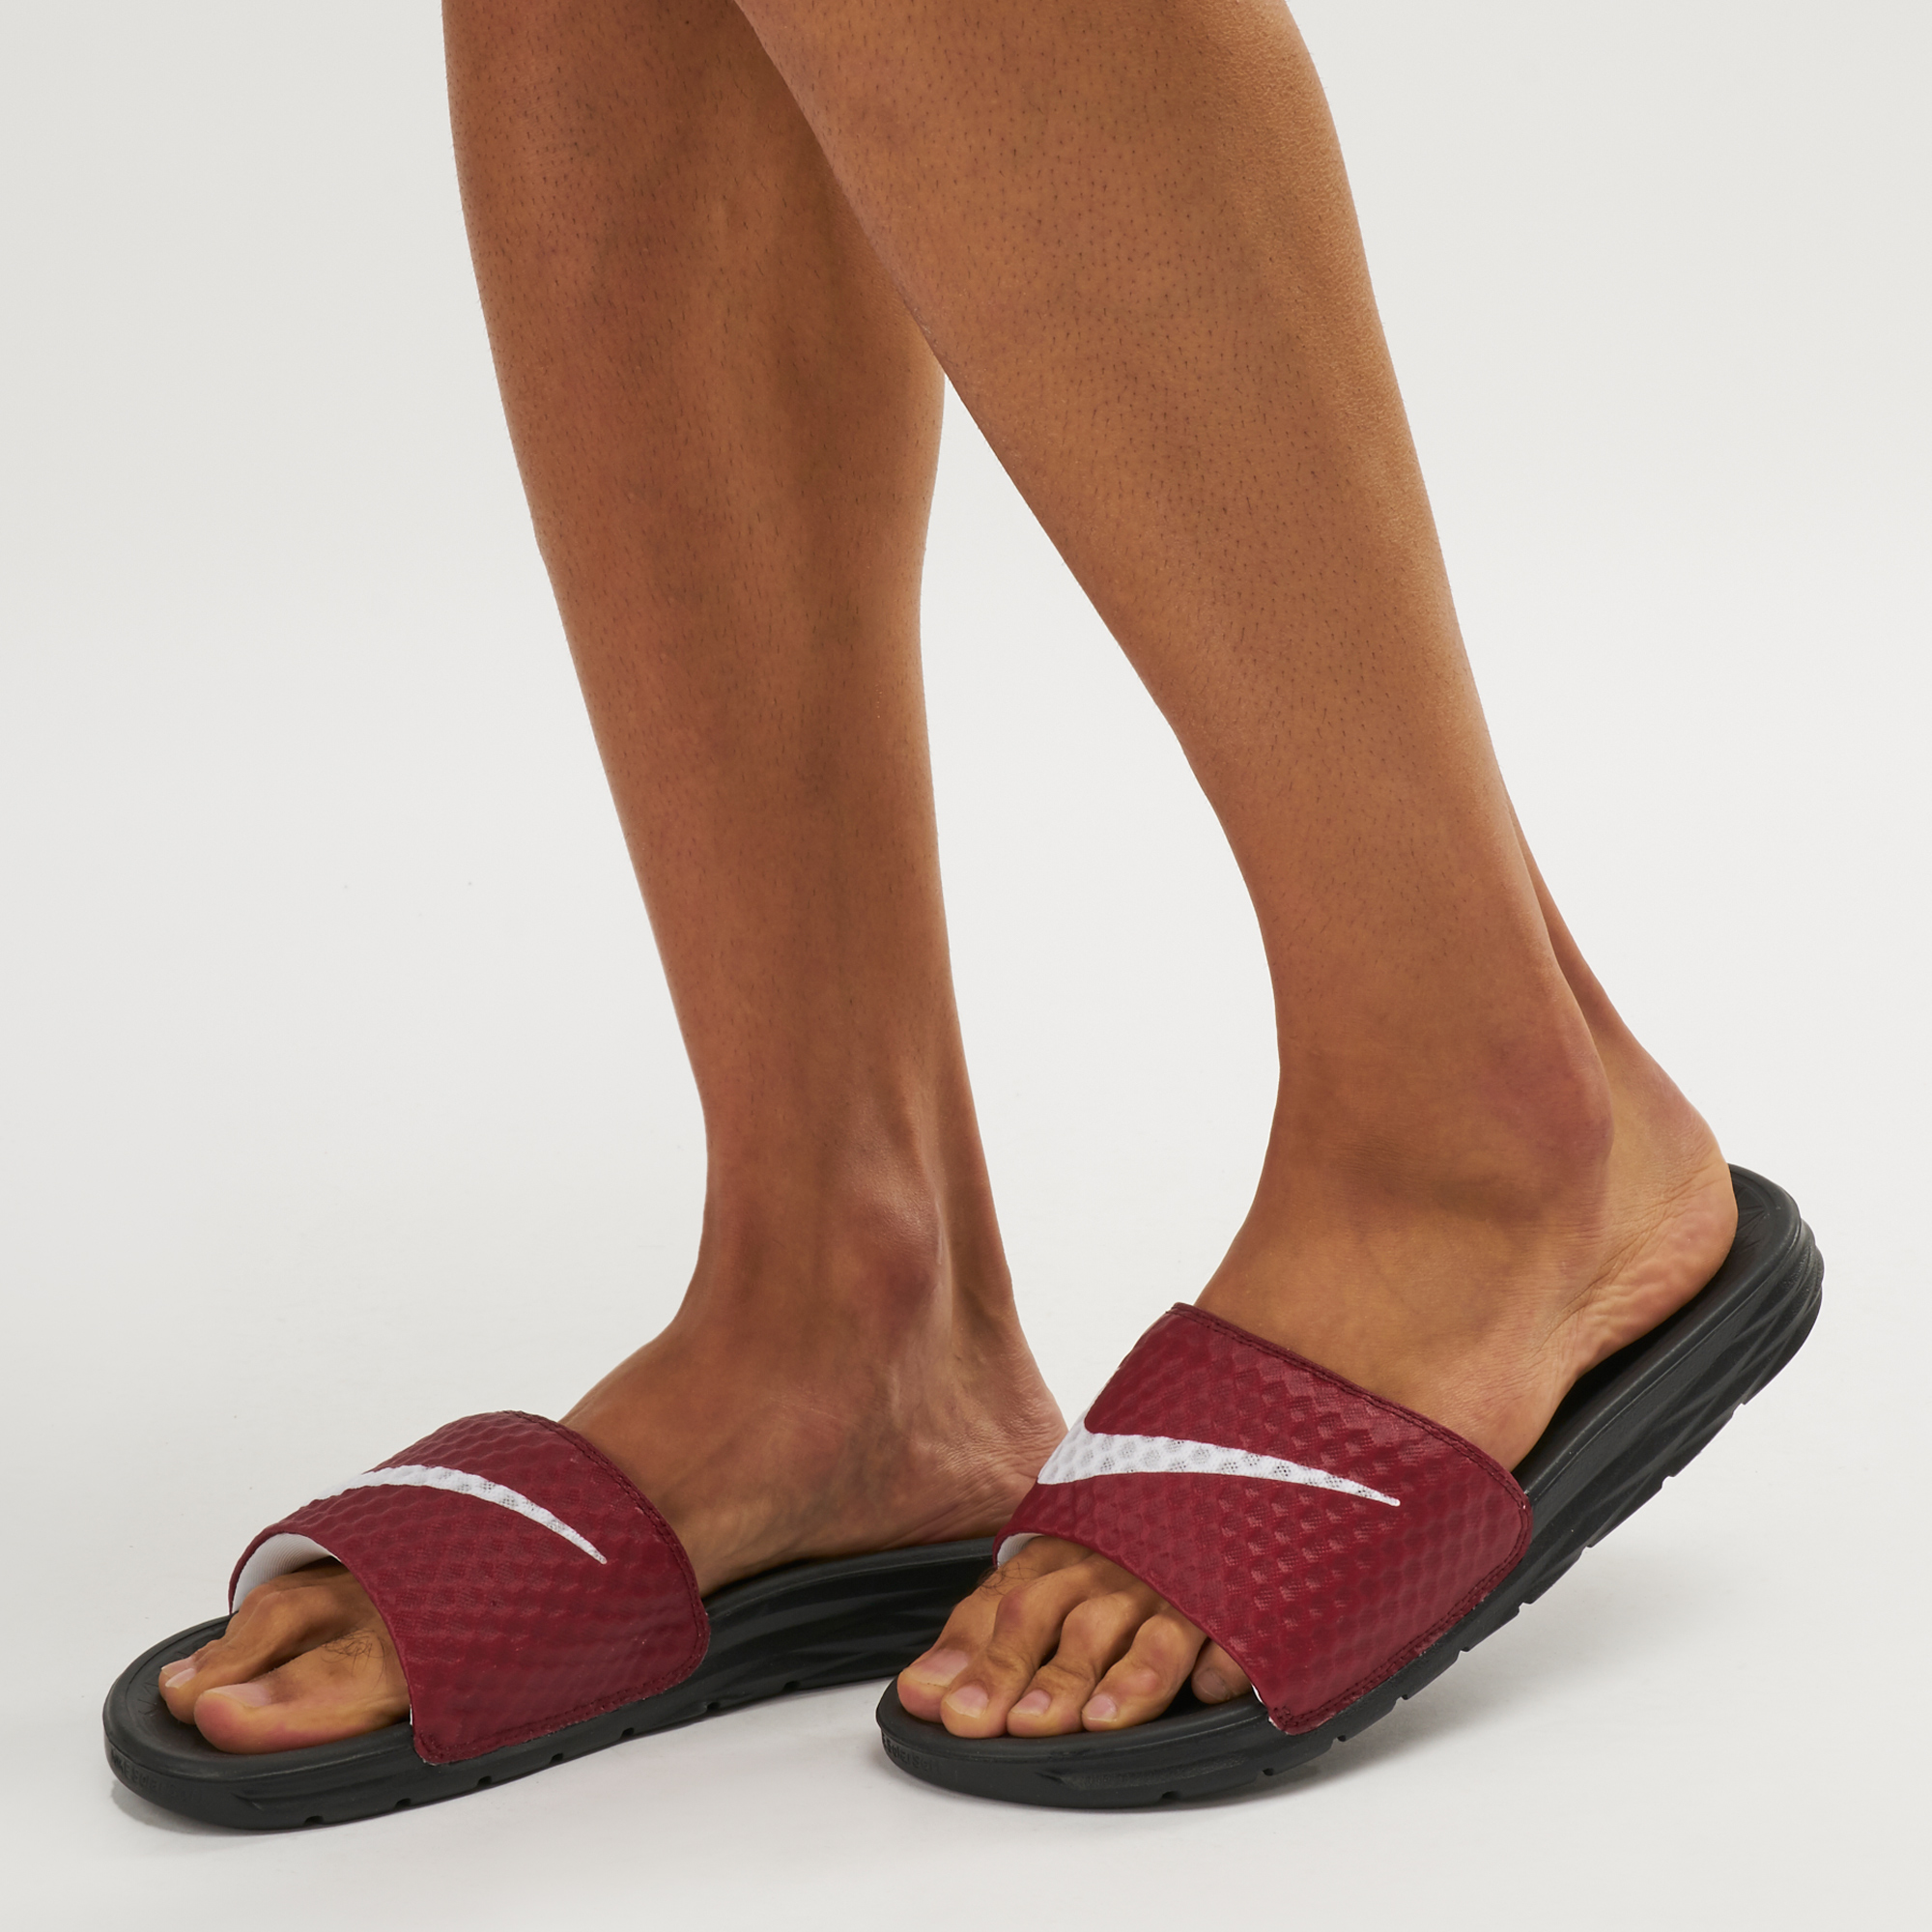 benassi solarsoft 2 slide sandal